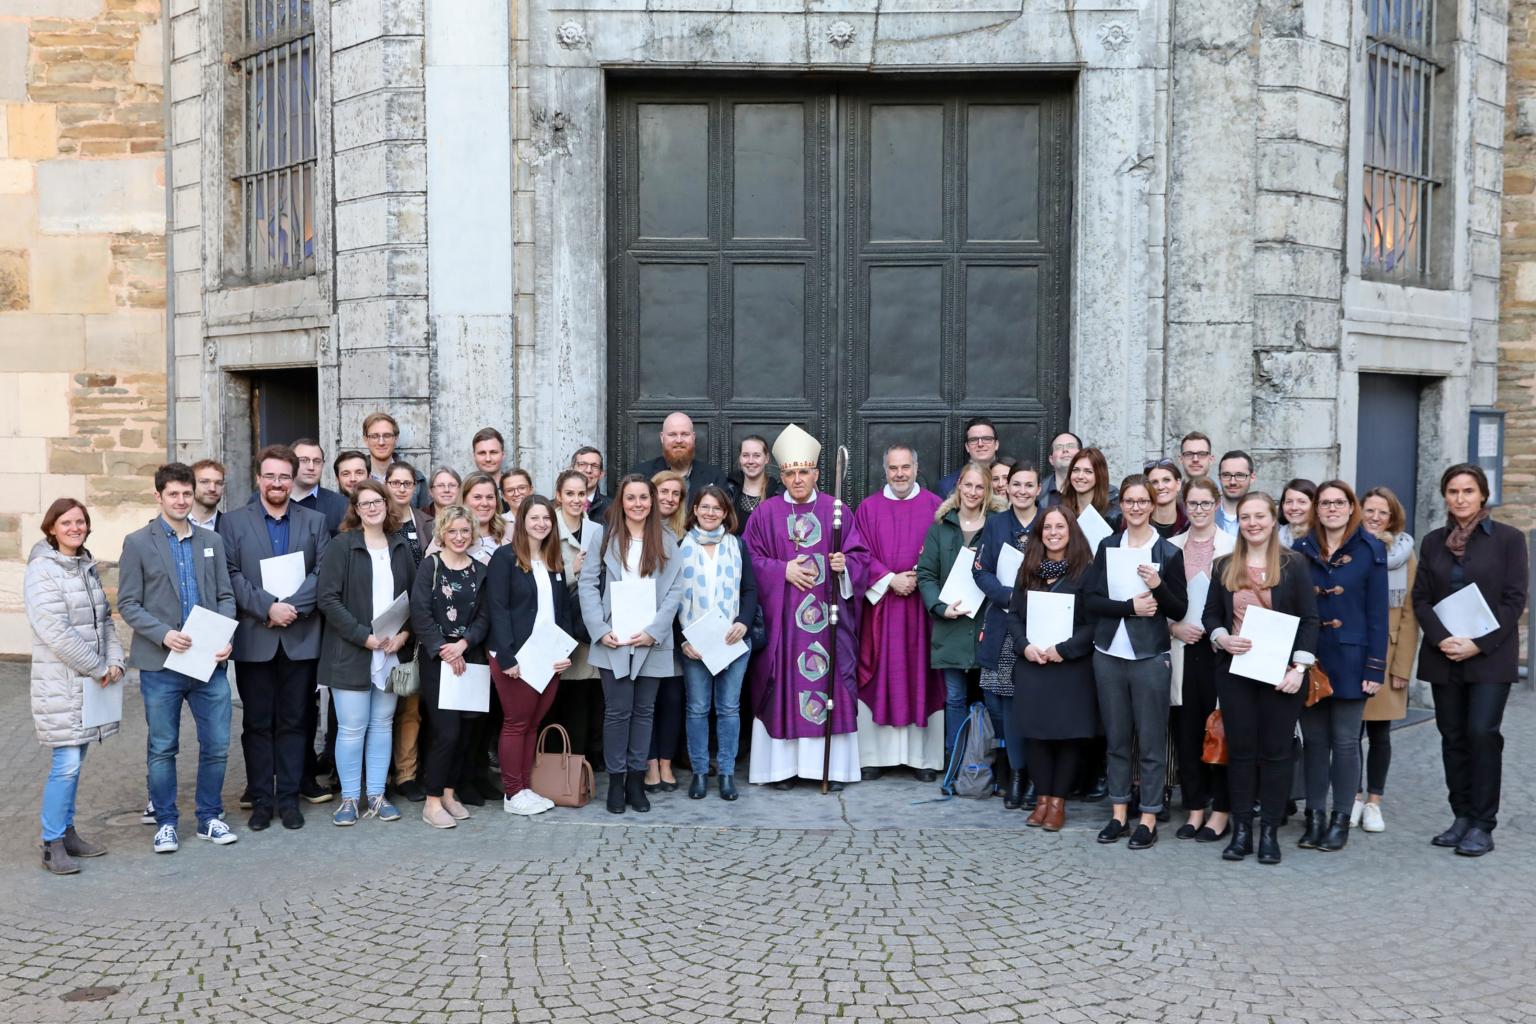 Missio Canonica 2019 (c) Bistum Aachen / Andreas Steindl